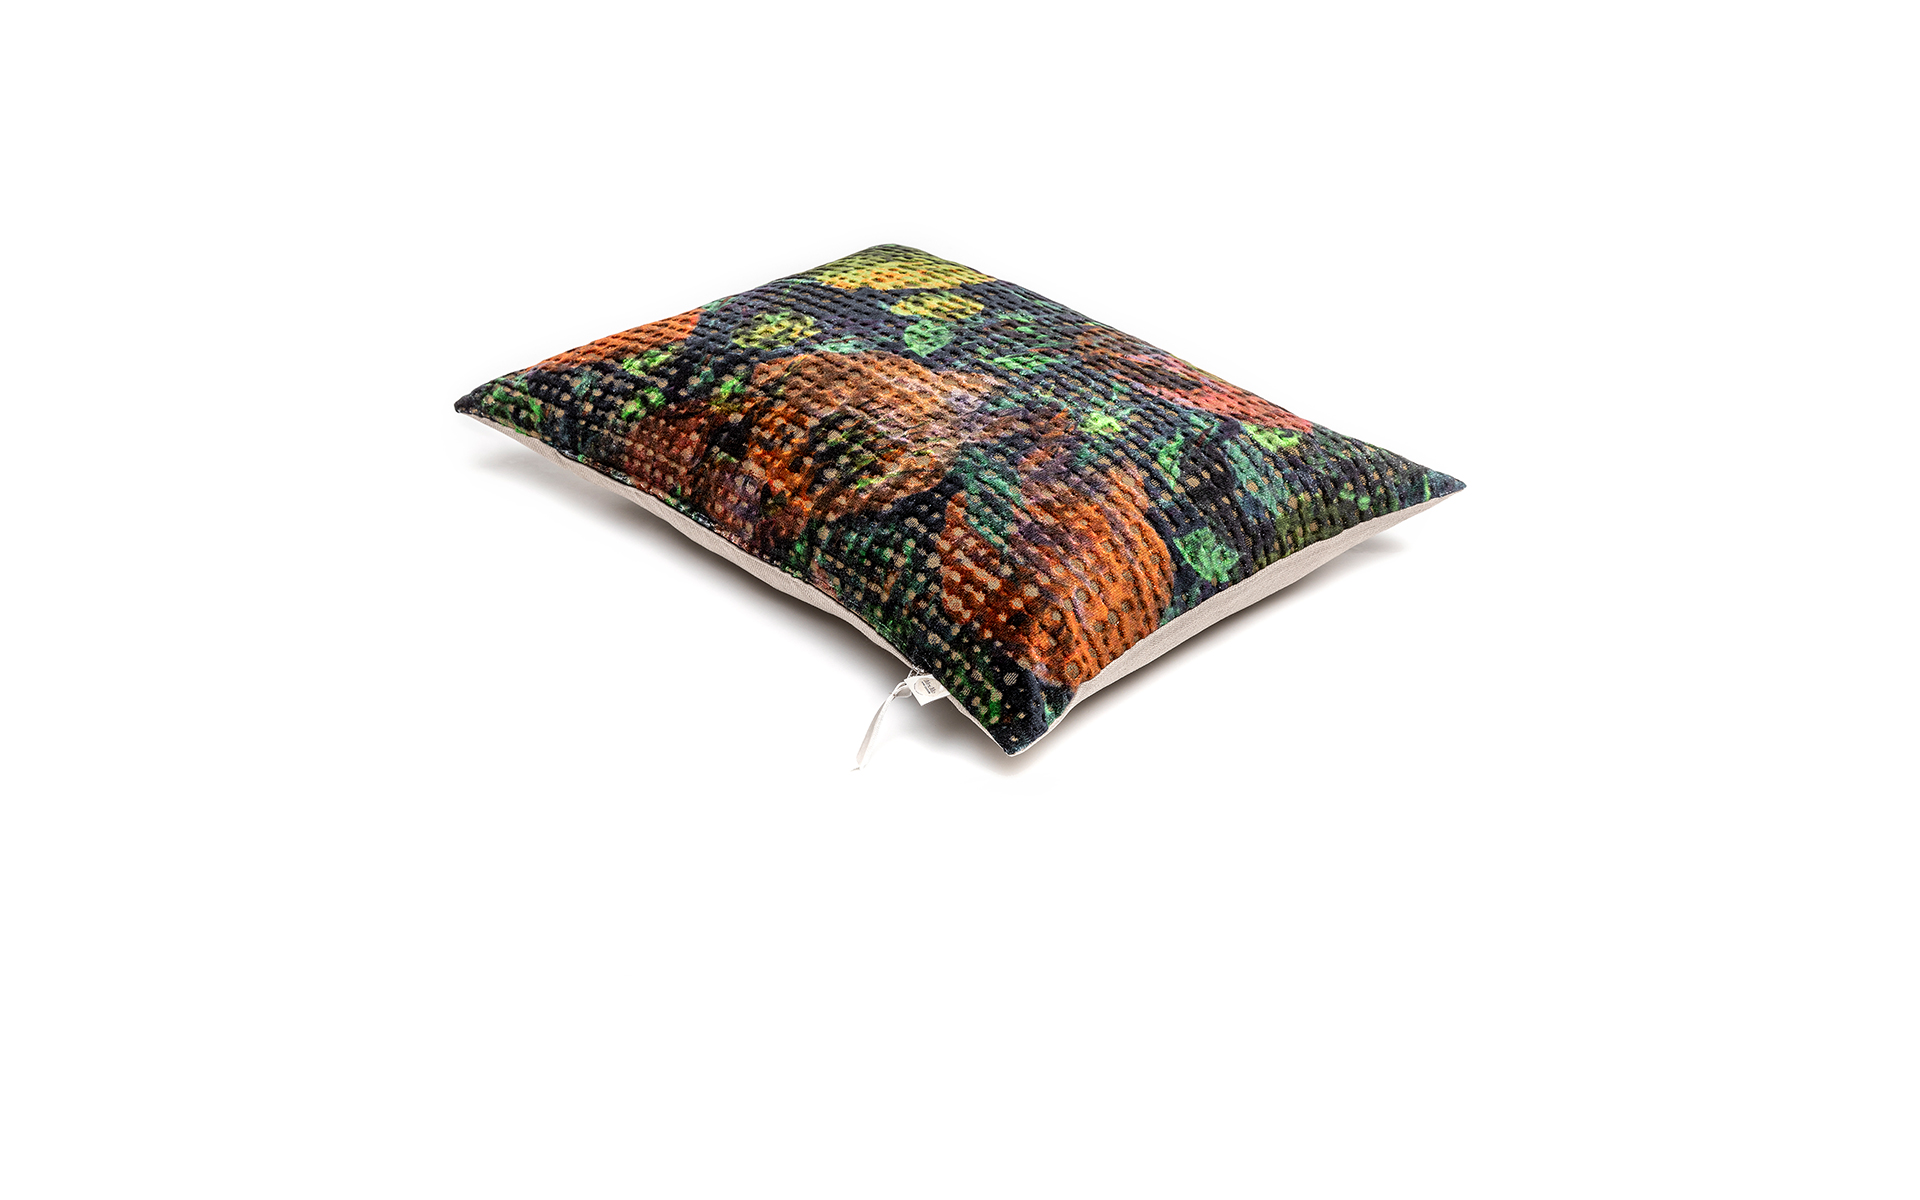 MrsMe Wonderlust cushion Bloom productpag. 1920x1200